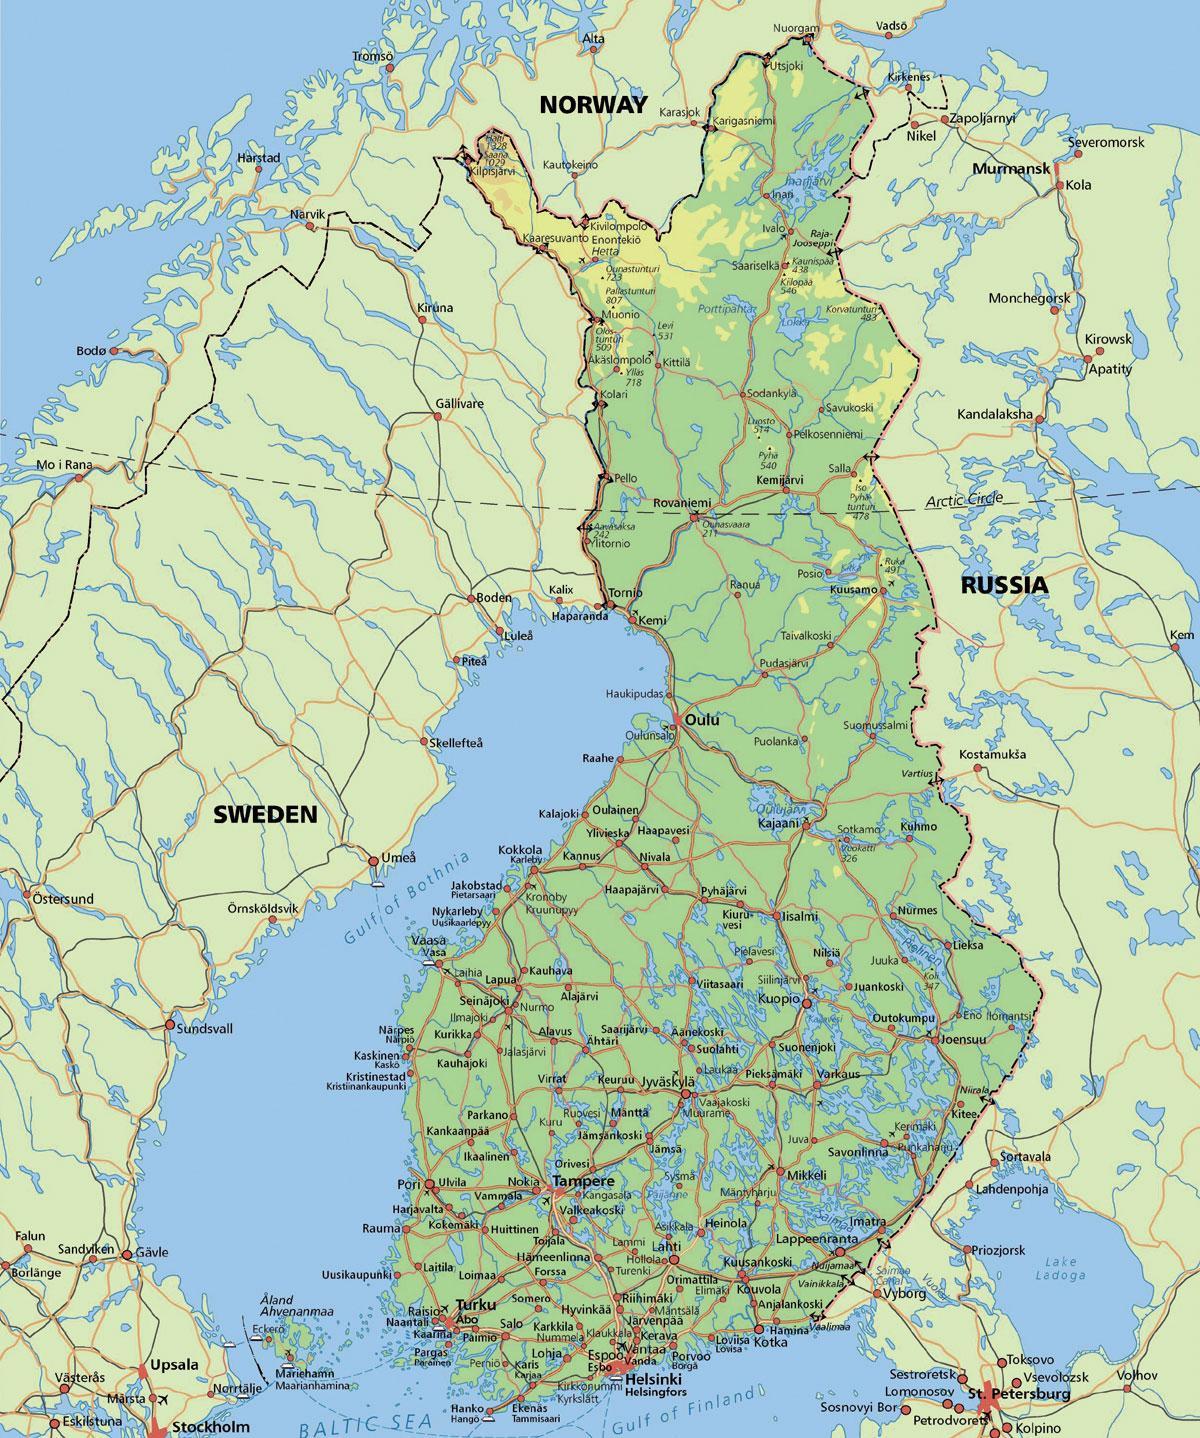 Mappa del circolo polare artico in Finlandia